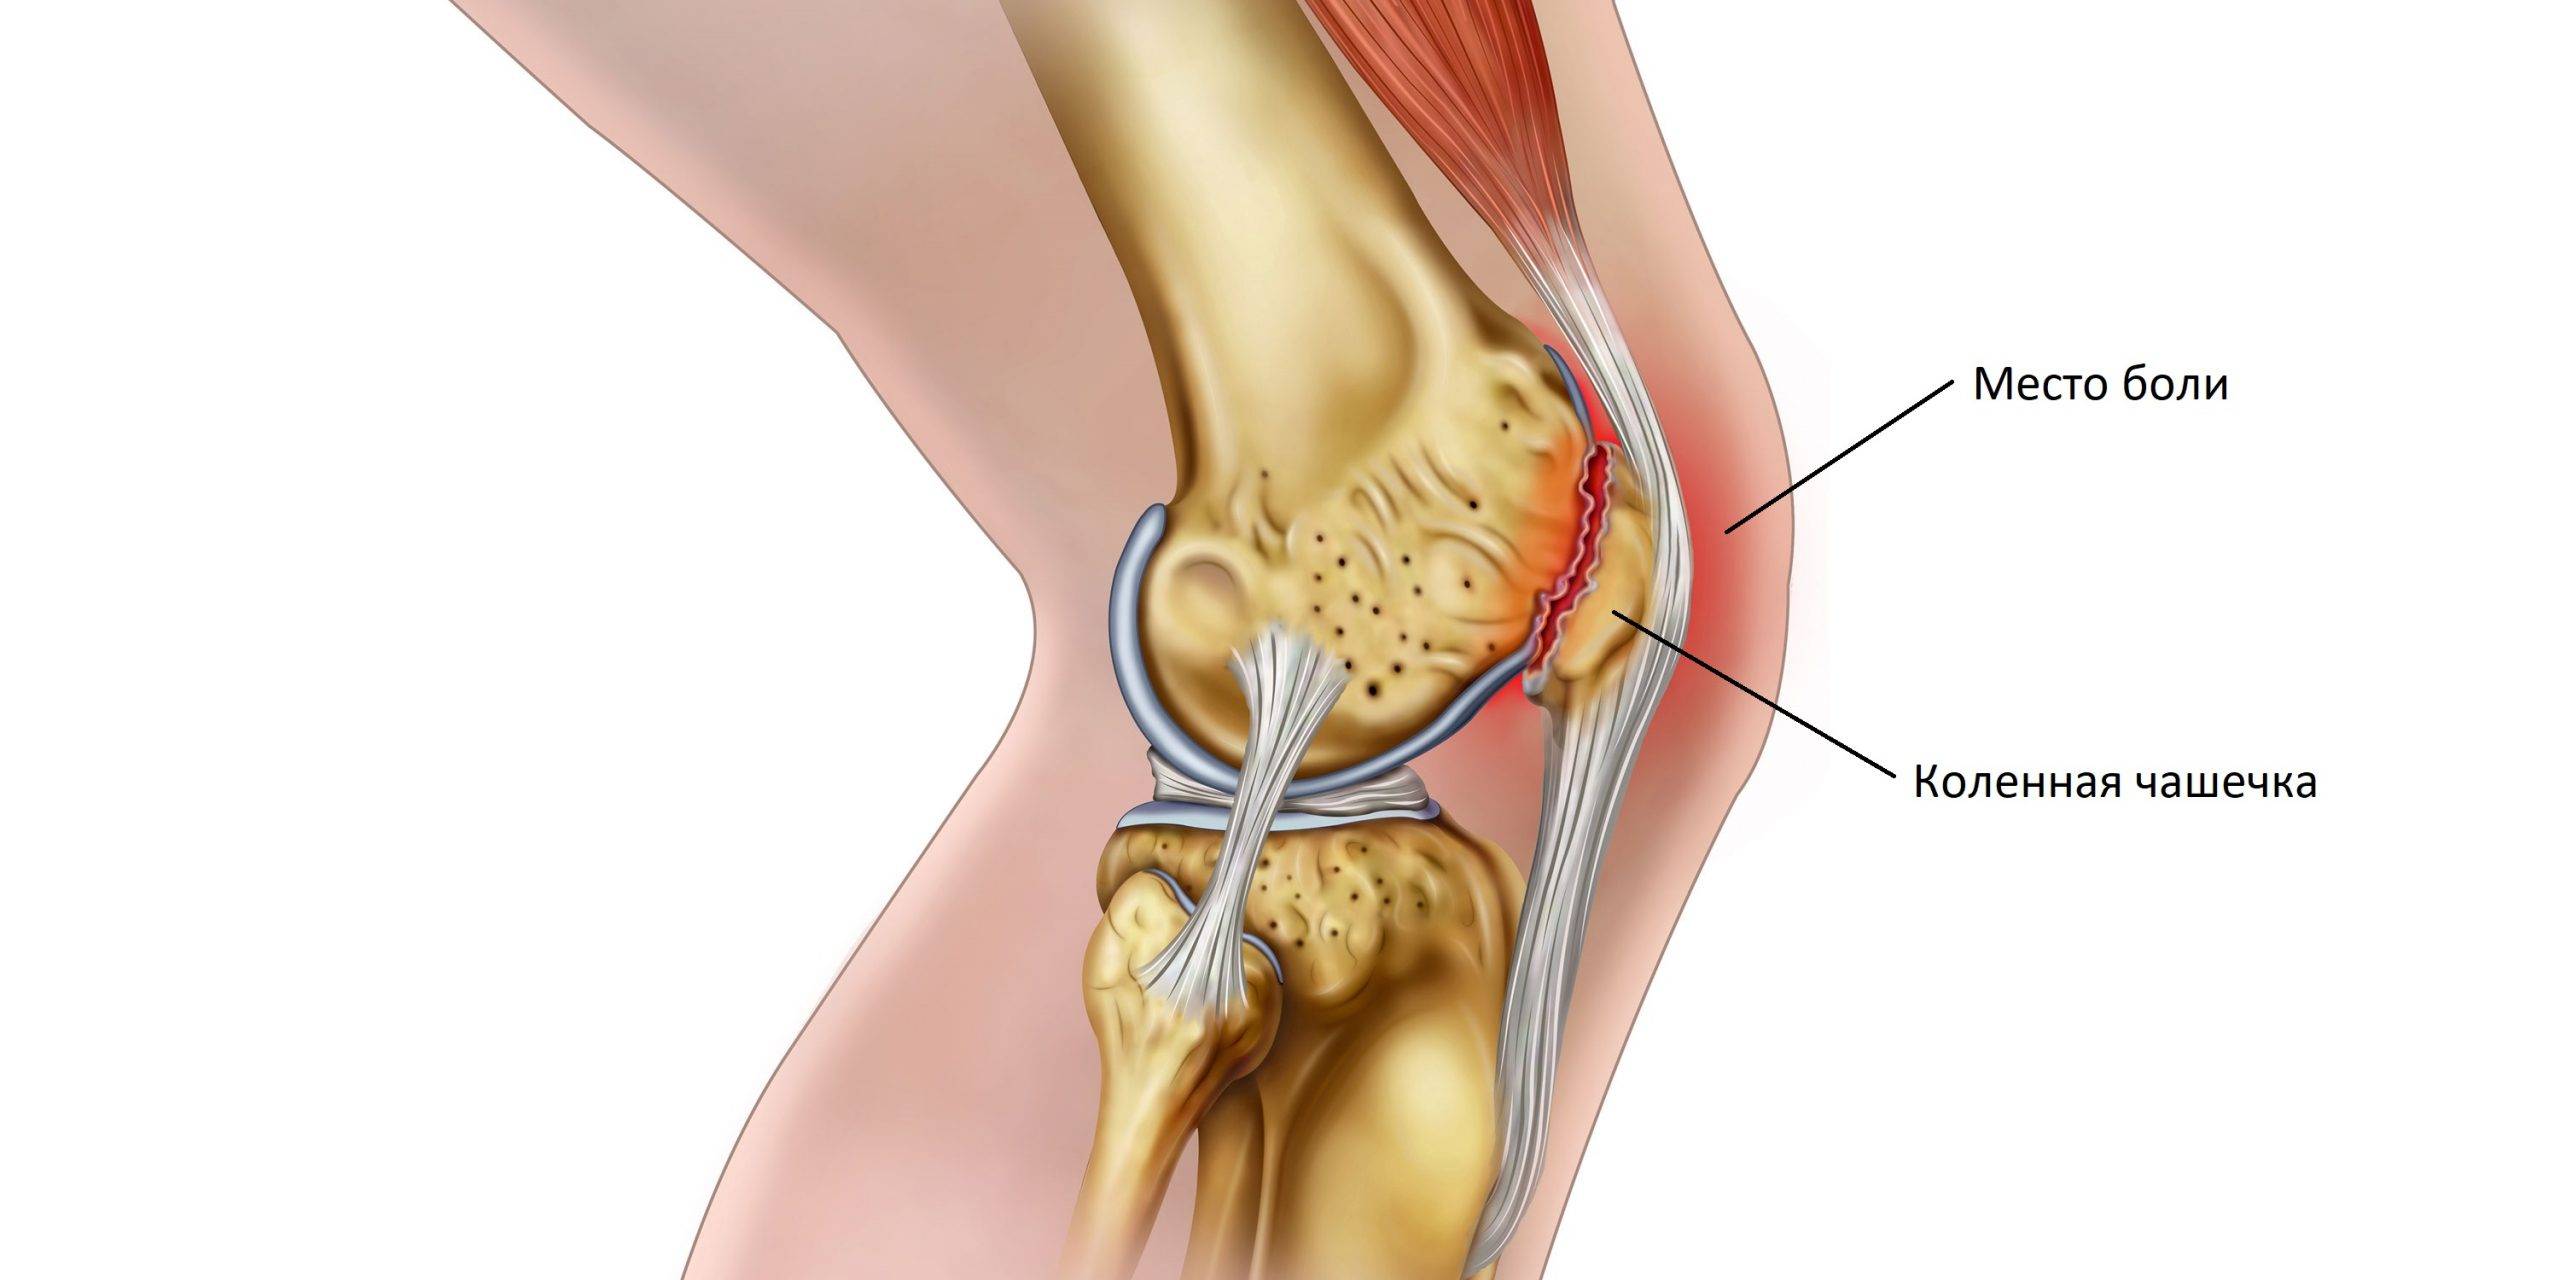 Боль в колене. почему болит колено?| ortoped-klinik.com